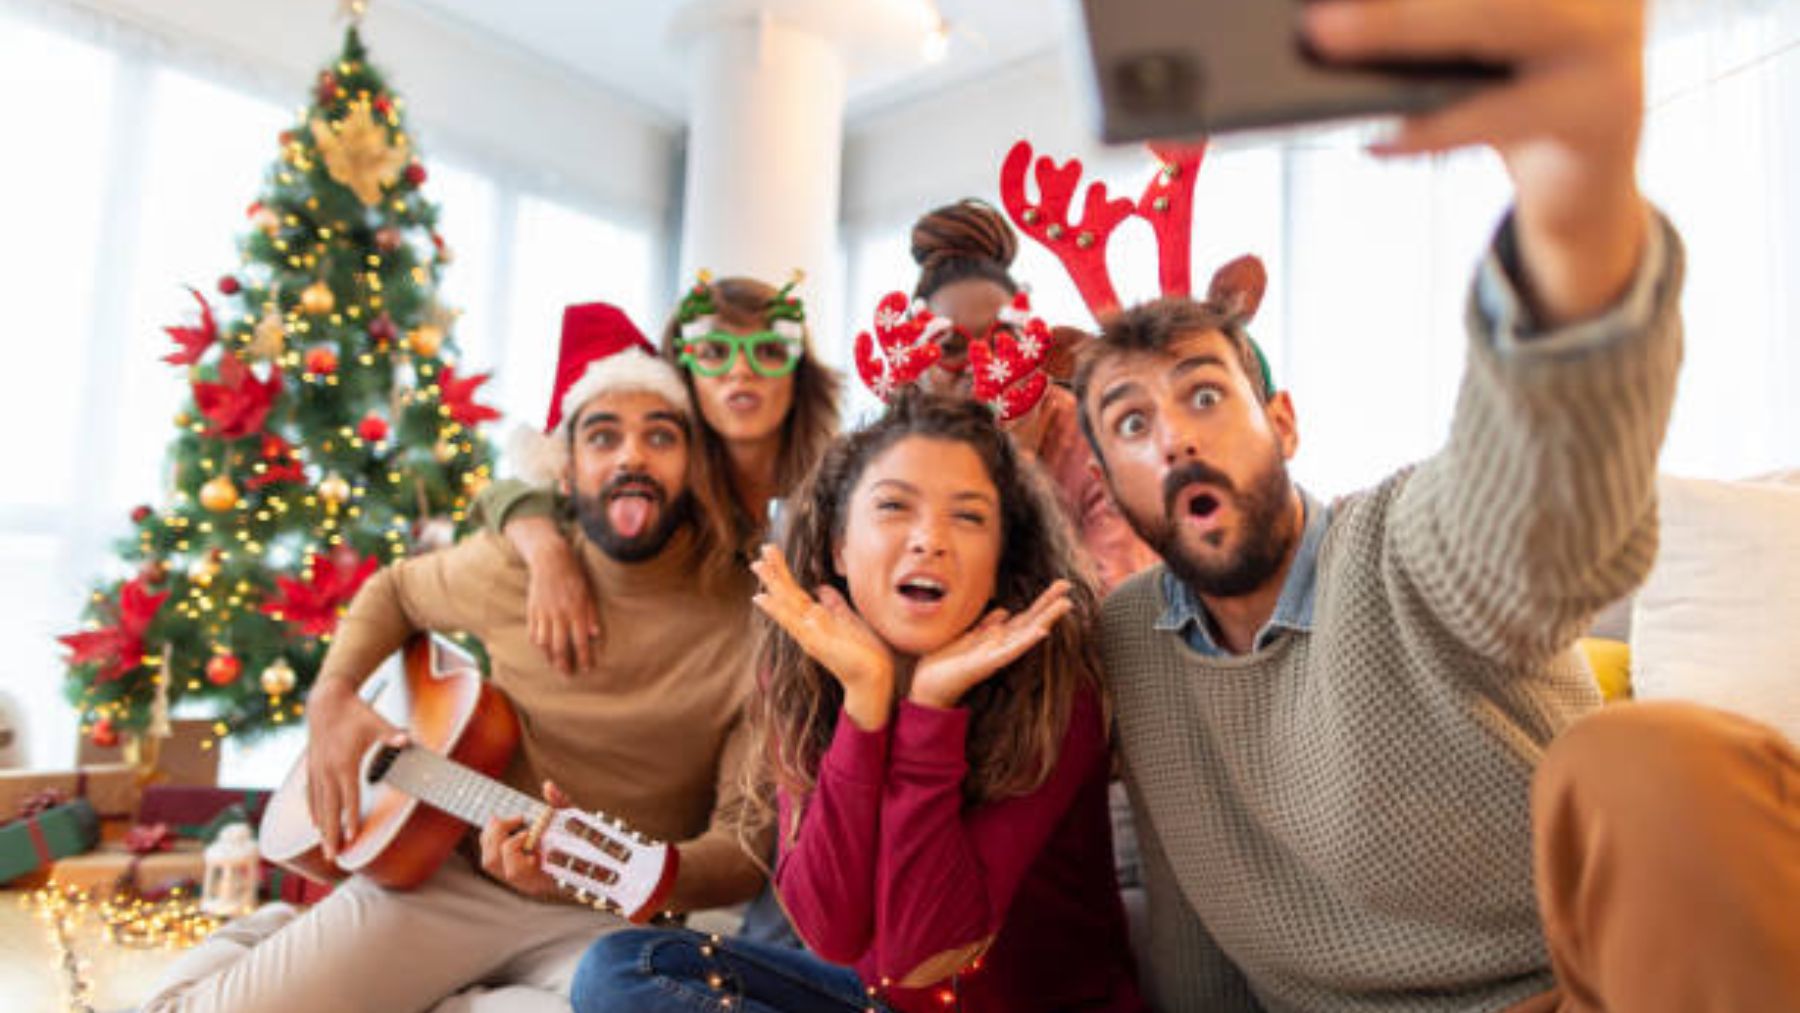 Descubre las tradiciones navideñas que puedes hacer con amigos